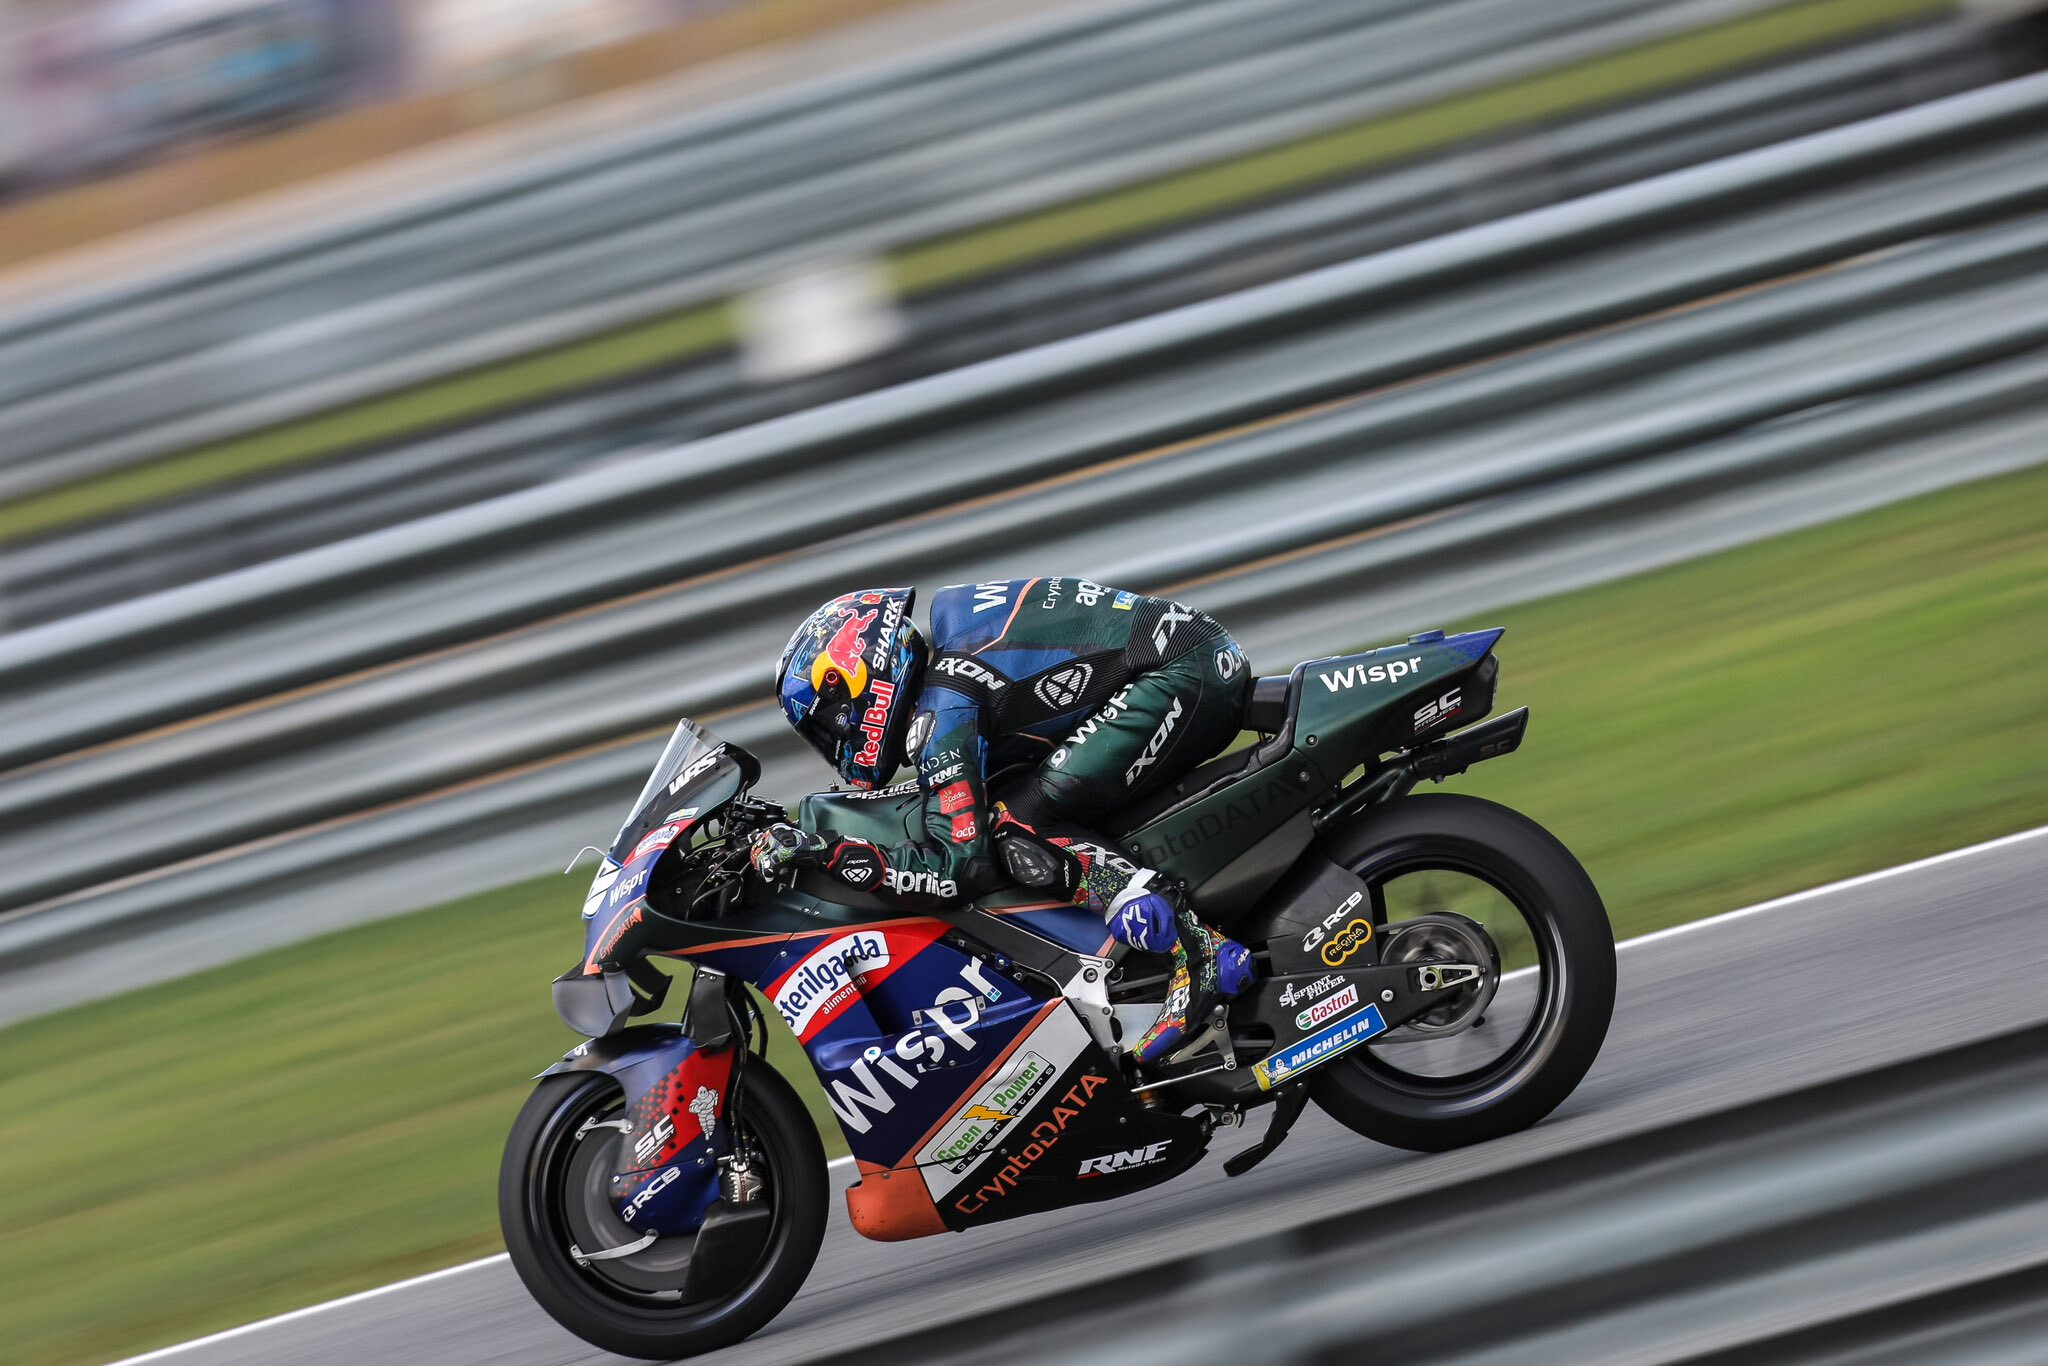 MotoGP anuncia oficialmente formato para fins de semana com corridas sprint  - Notícia de MotoGP